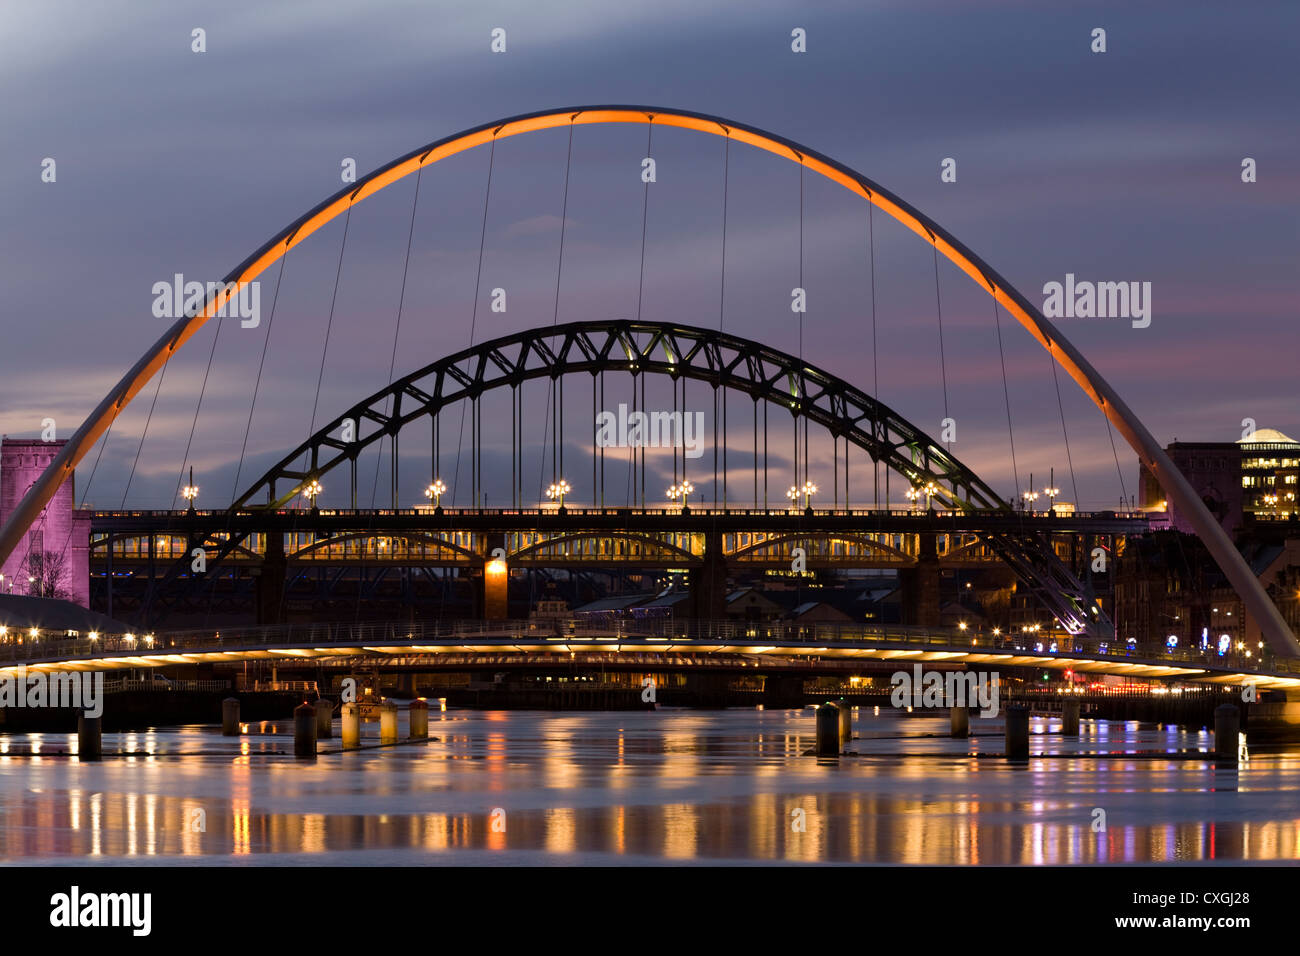 La icónica de puentes sobre el río Tyne link Newcastle Upon Tyne en Gateshead. UK Foto de stock